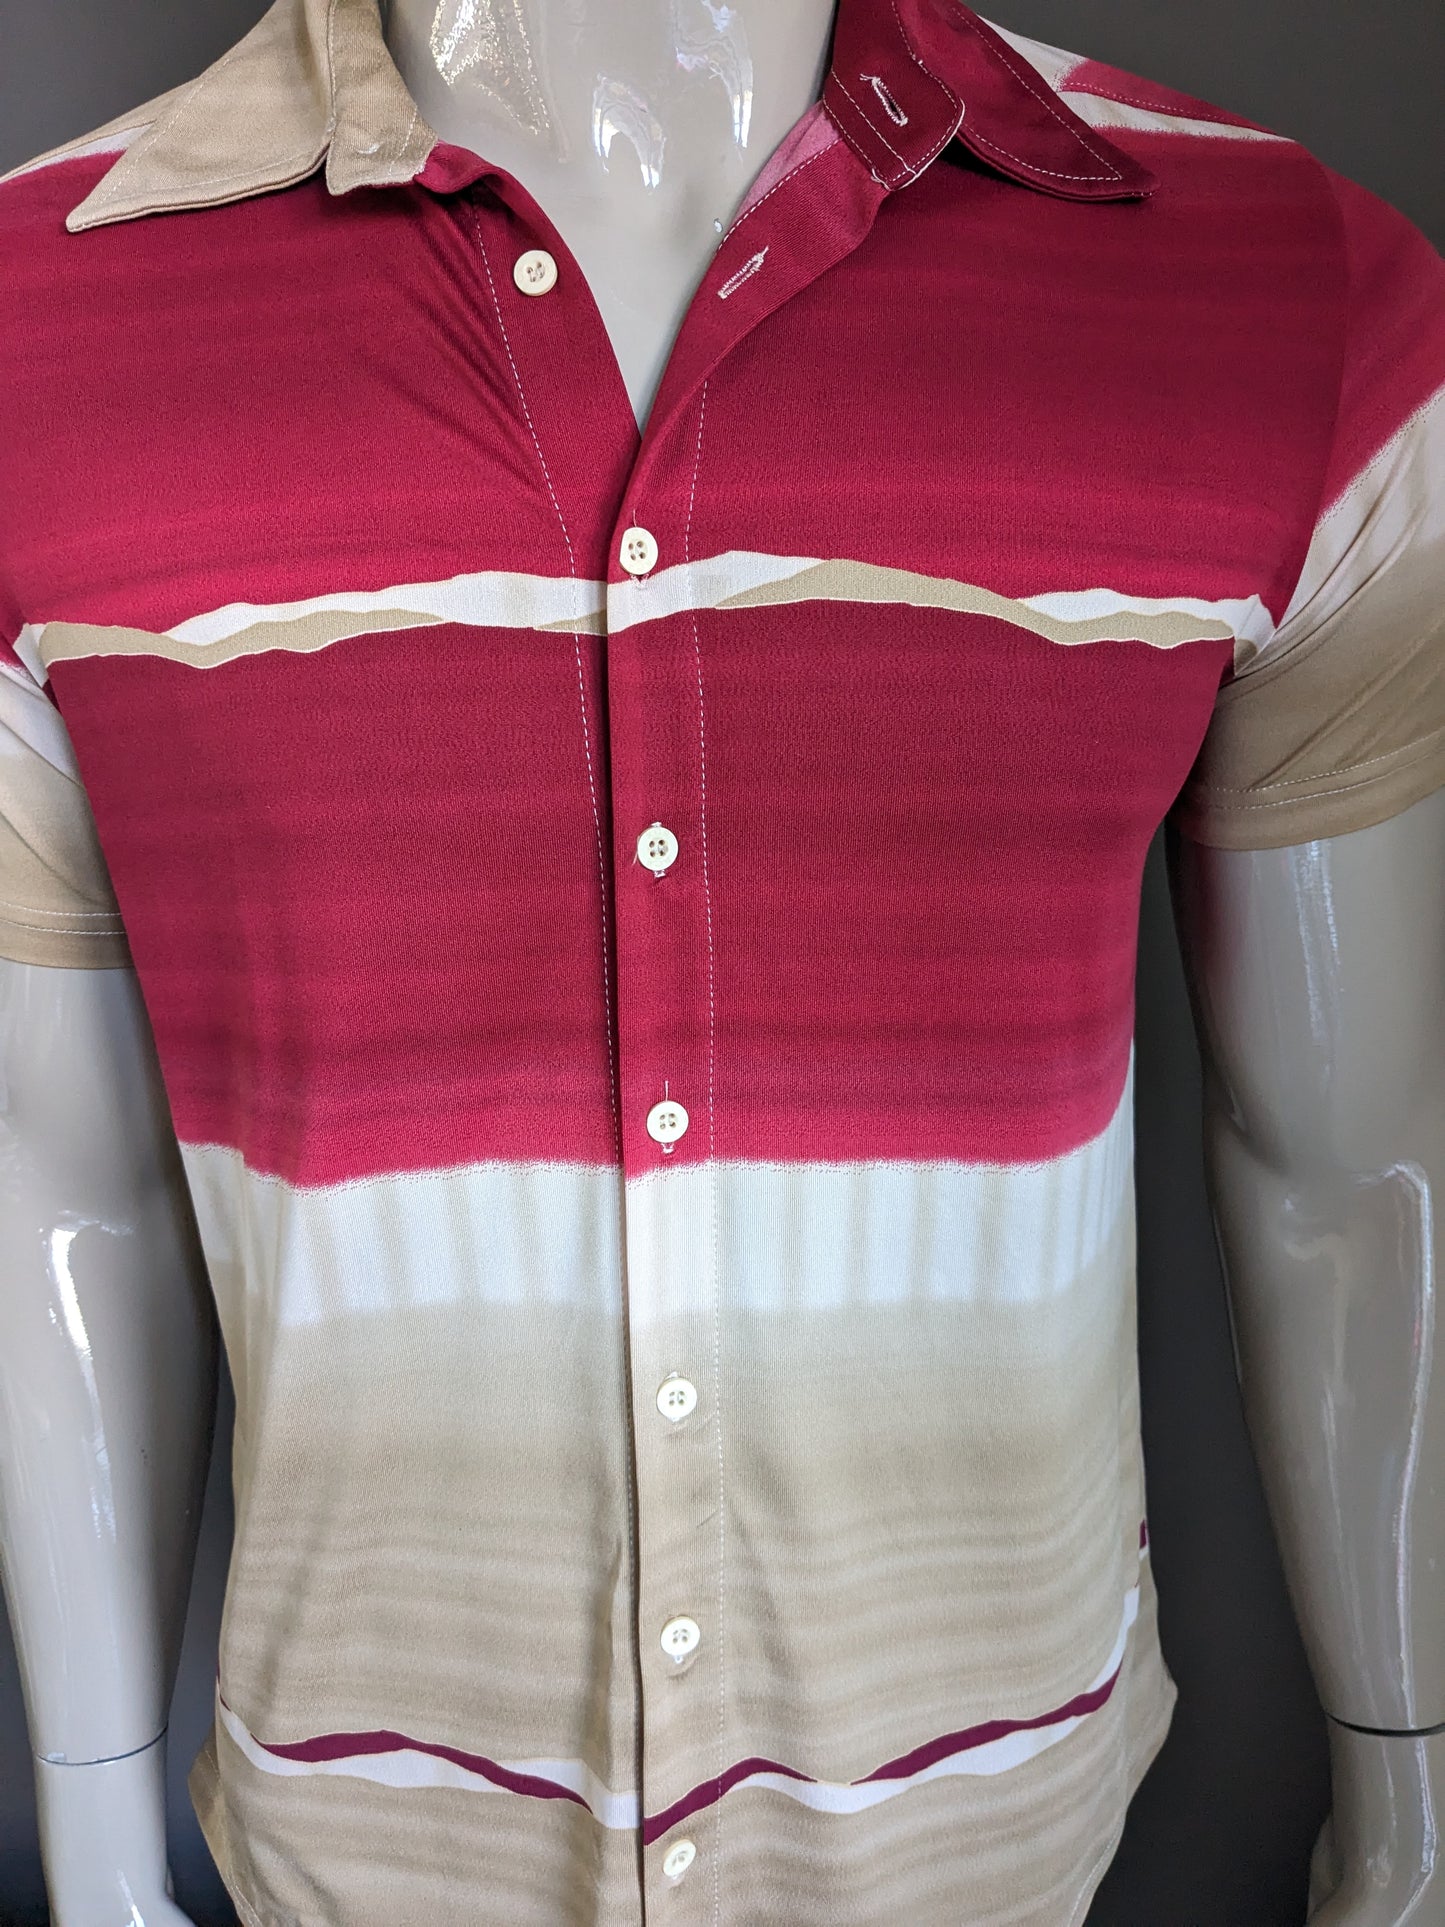 Vintage CSC -Shirt Kurzarm. Brauner beige rot gefärbt. Größe L. Stretch.